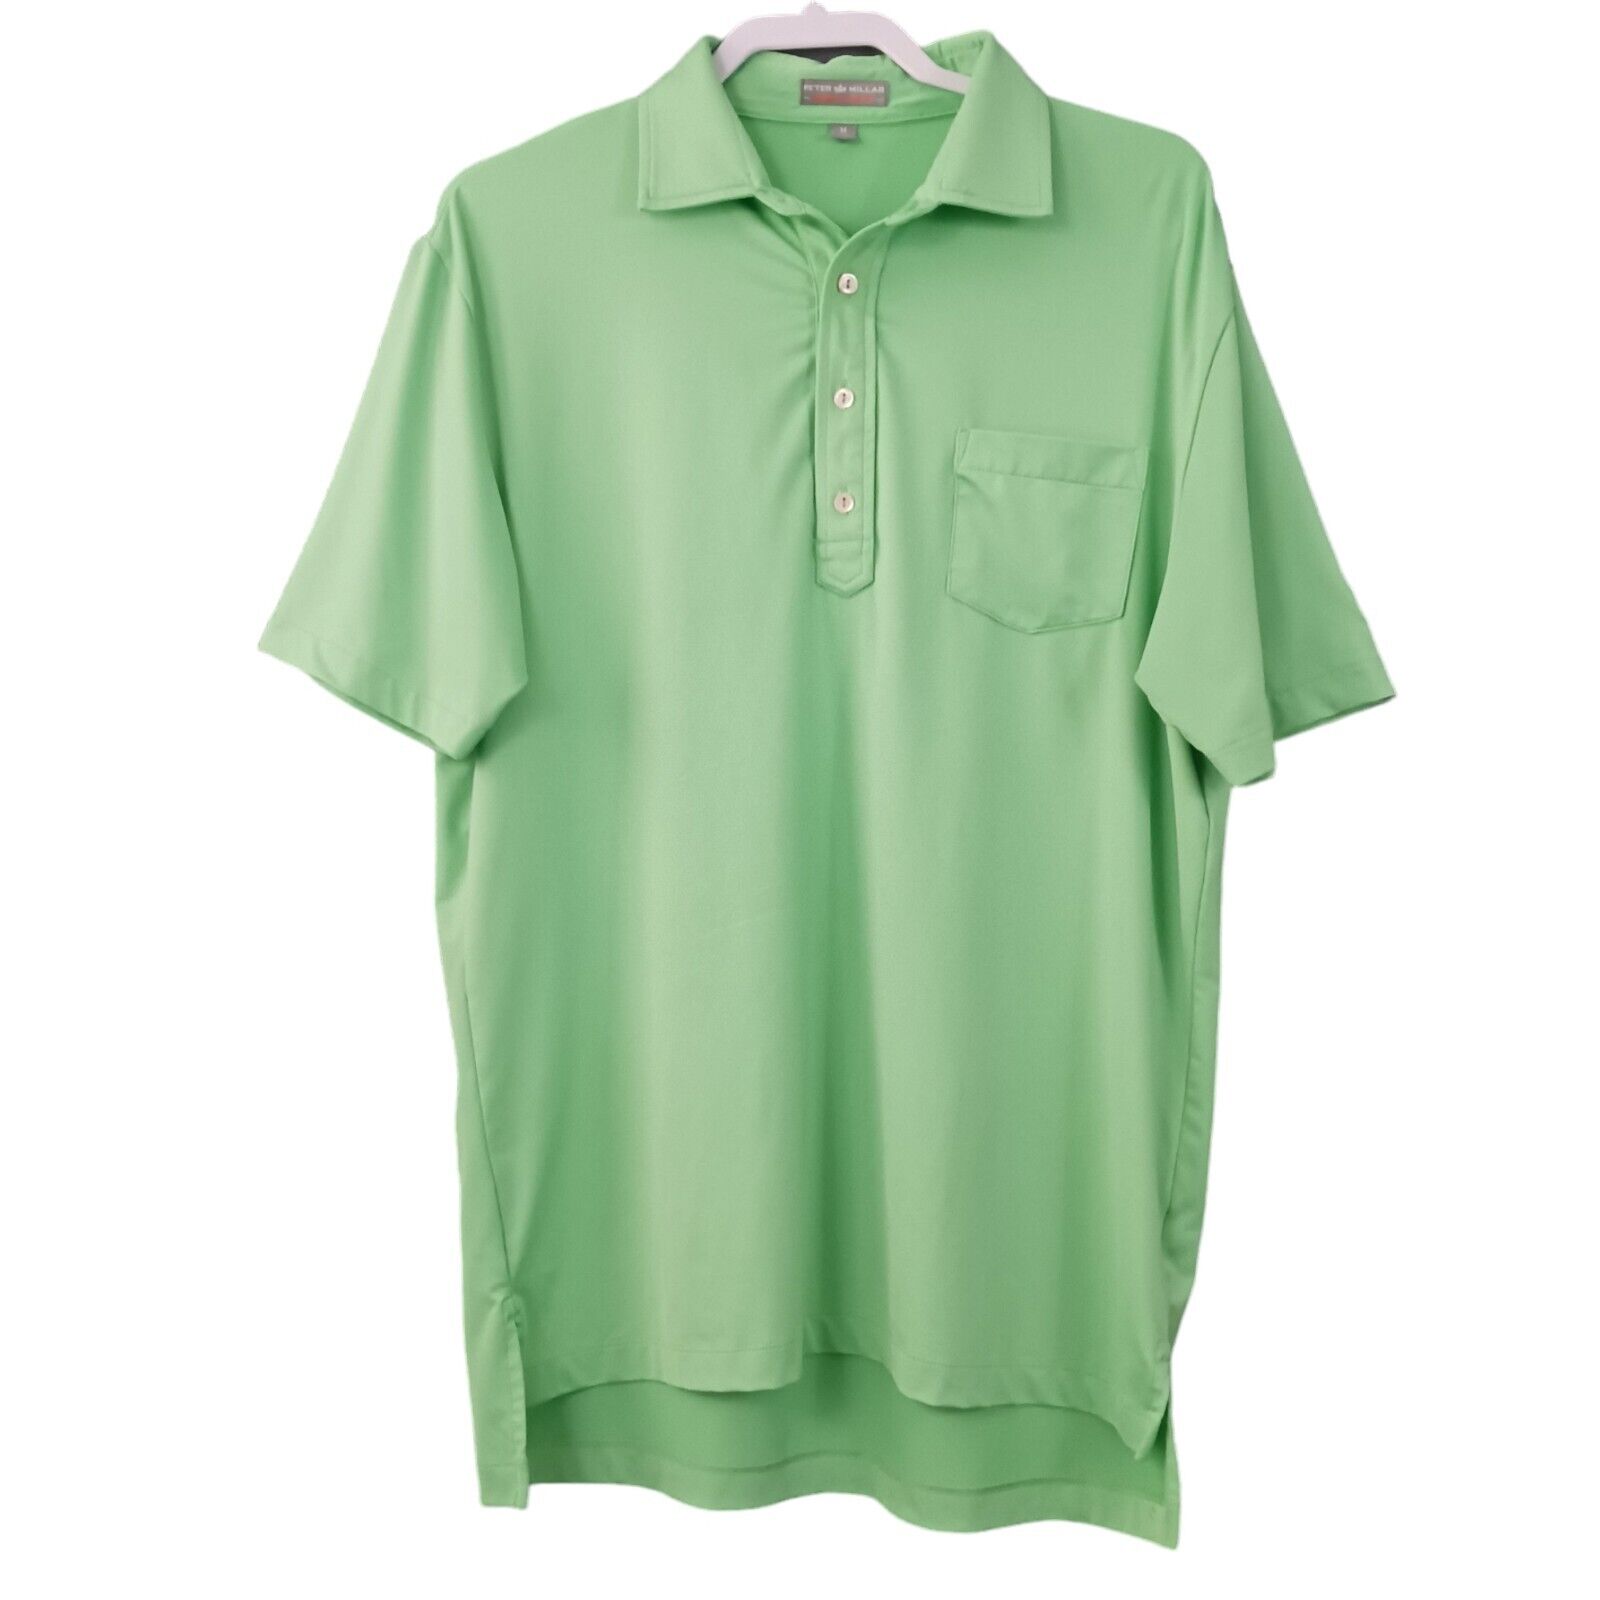 Peter Millar Polo Shirt Mens Medium Summer Comfort Green Pocket Performance 